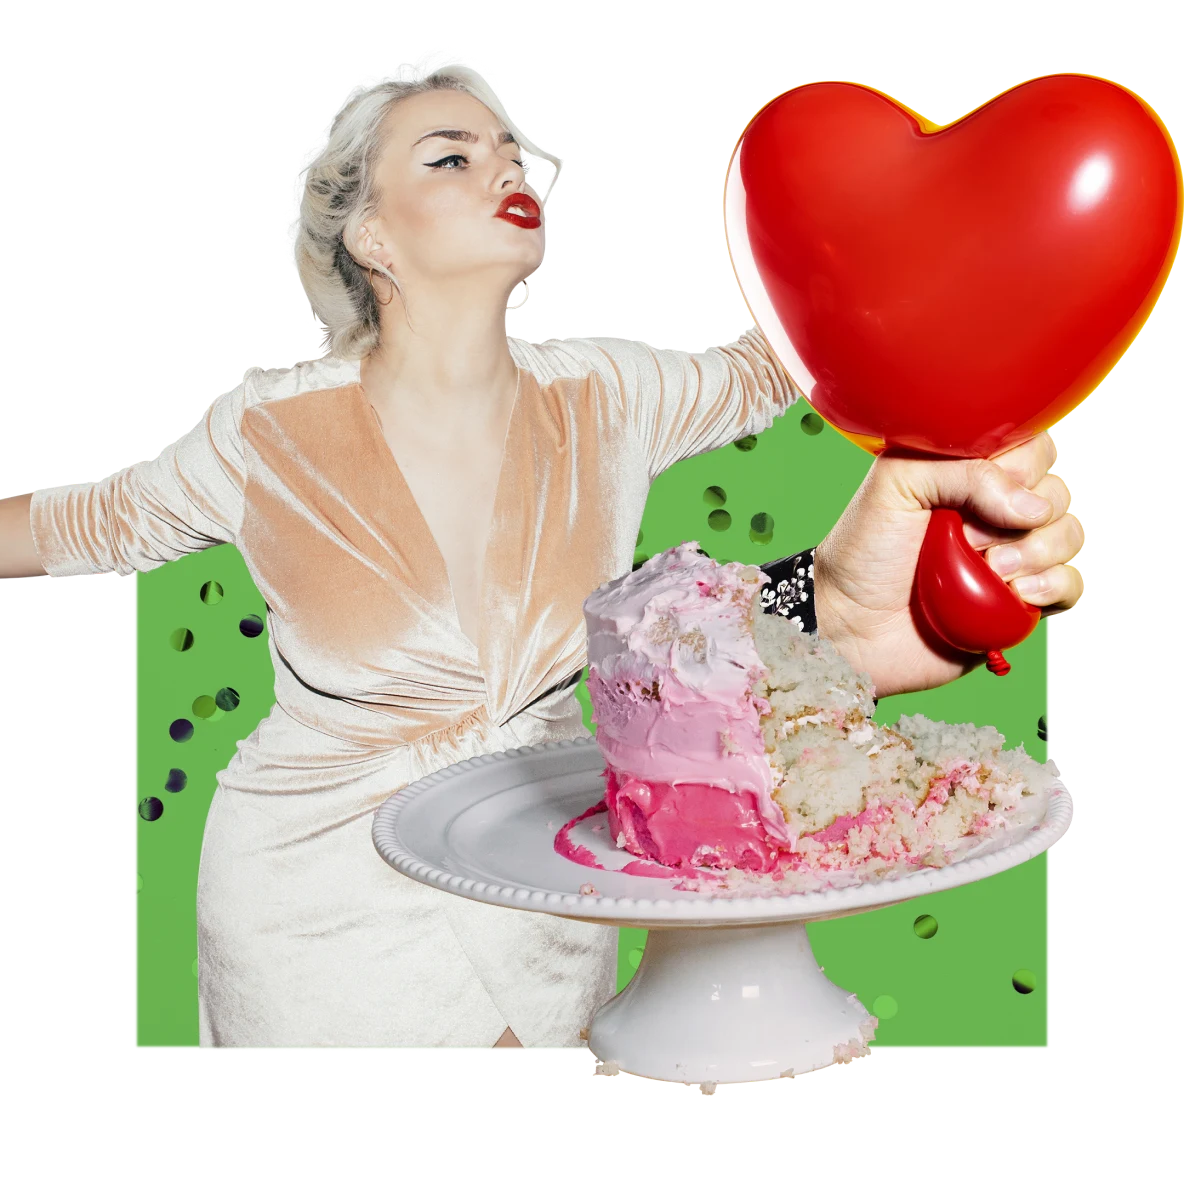 Collage di immagini a tema festa. A sinistra, donna bianca dai capelli biondi con un rossetto rosso intenso e un vestito rosa che balla. Una torta rosa mezza mangiata su un vassoio bianco. Una mano bianca schiaccia la parte inferiore di un palloncino rosso a forma di cuore.